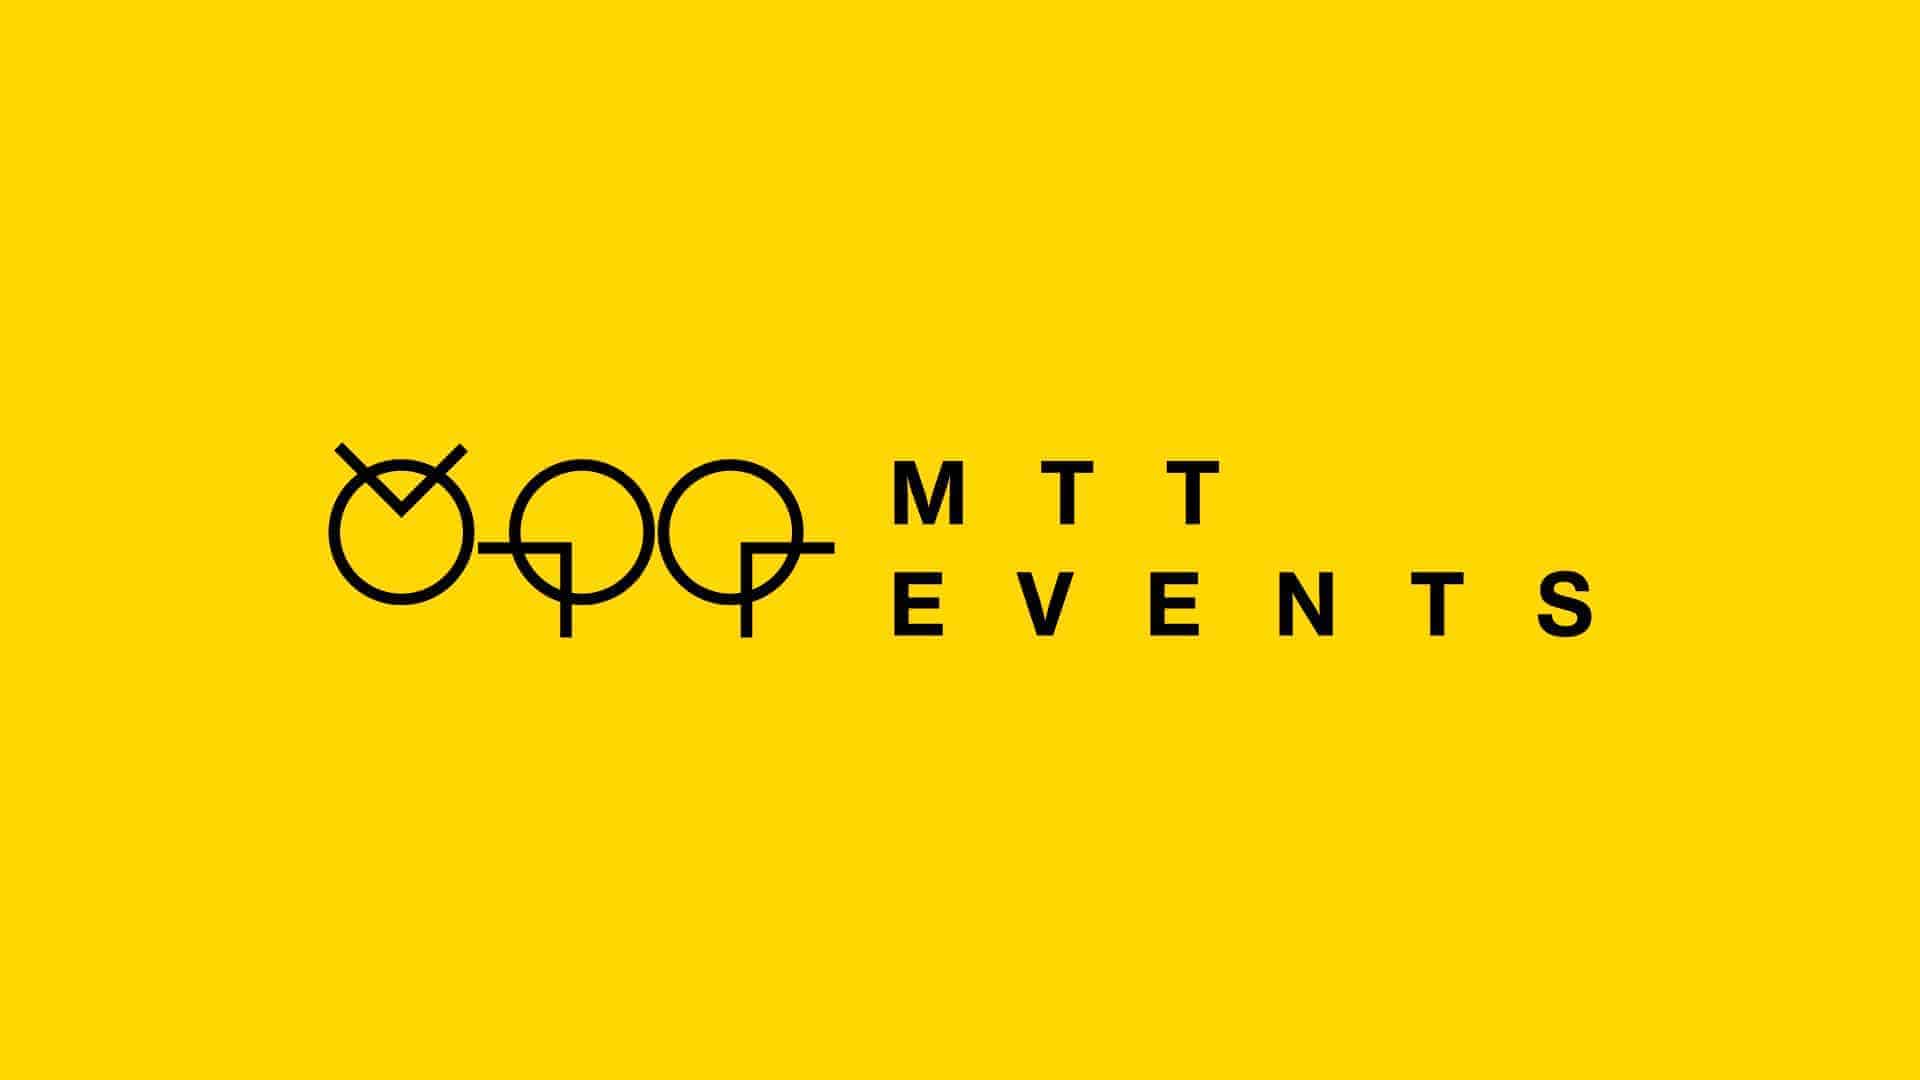 (c) Mtt-events.com